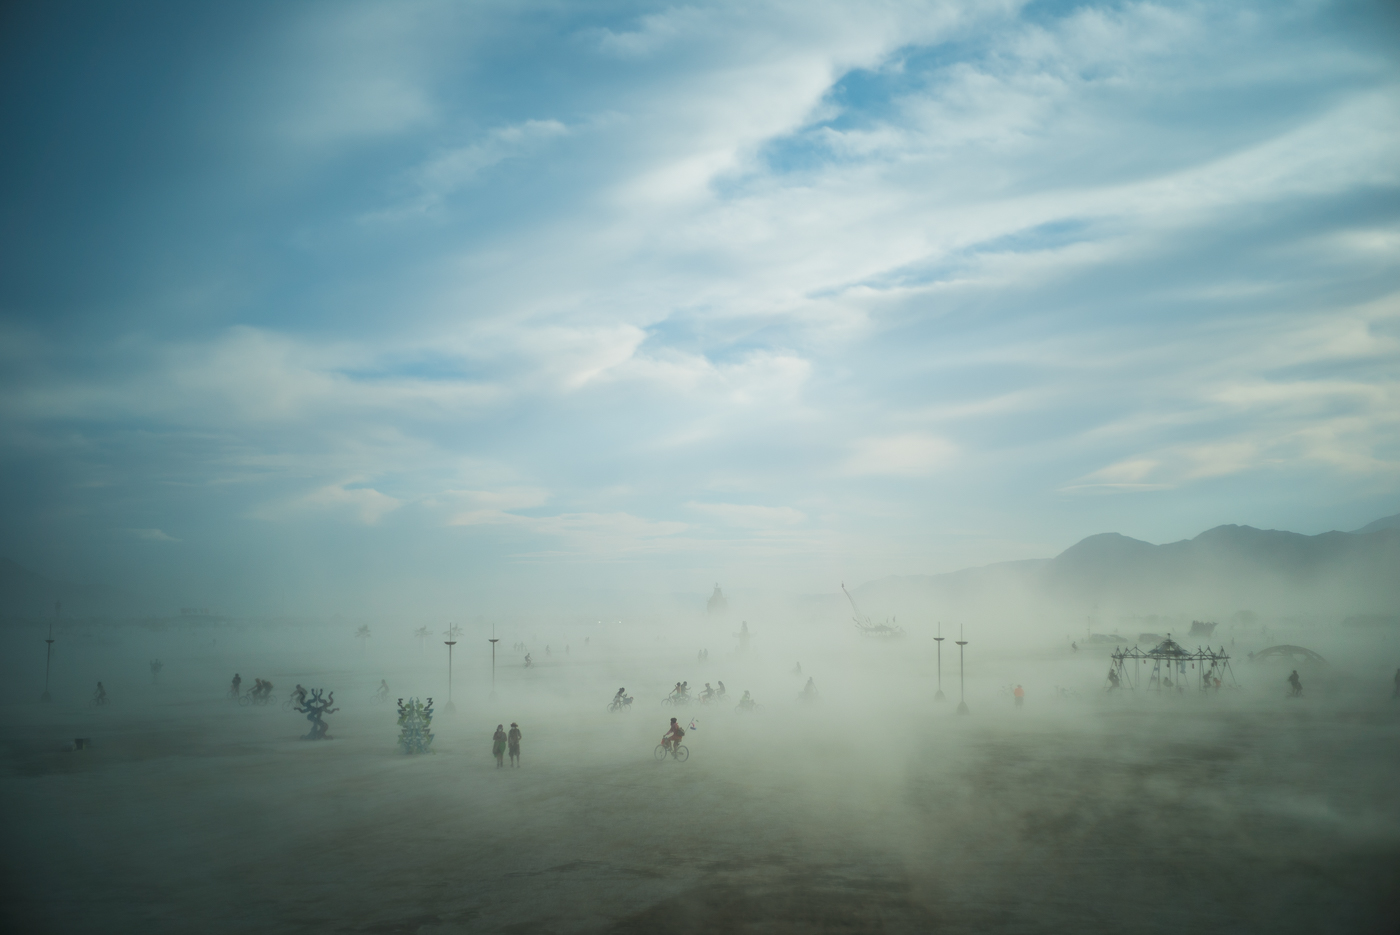 Dusty Playa, Burning Man 2014: In Dust We Trust - Photos of a Dusty Playa